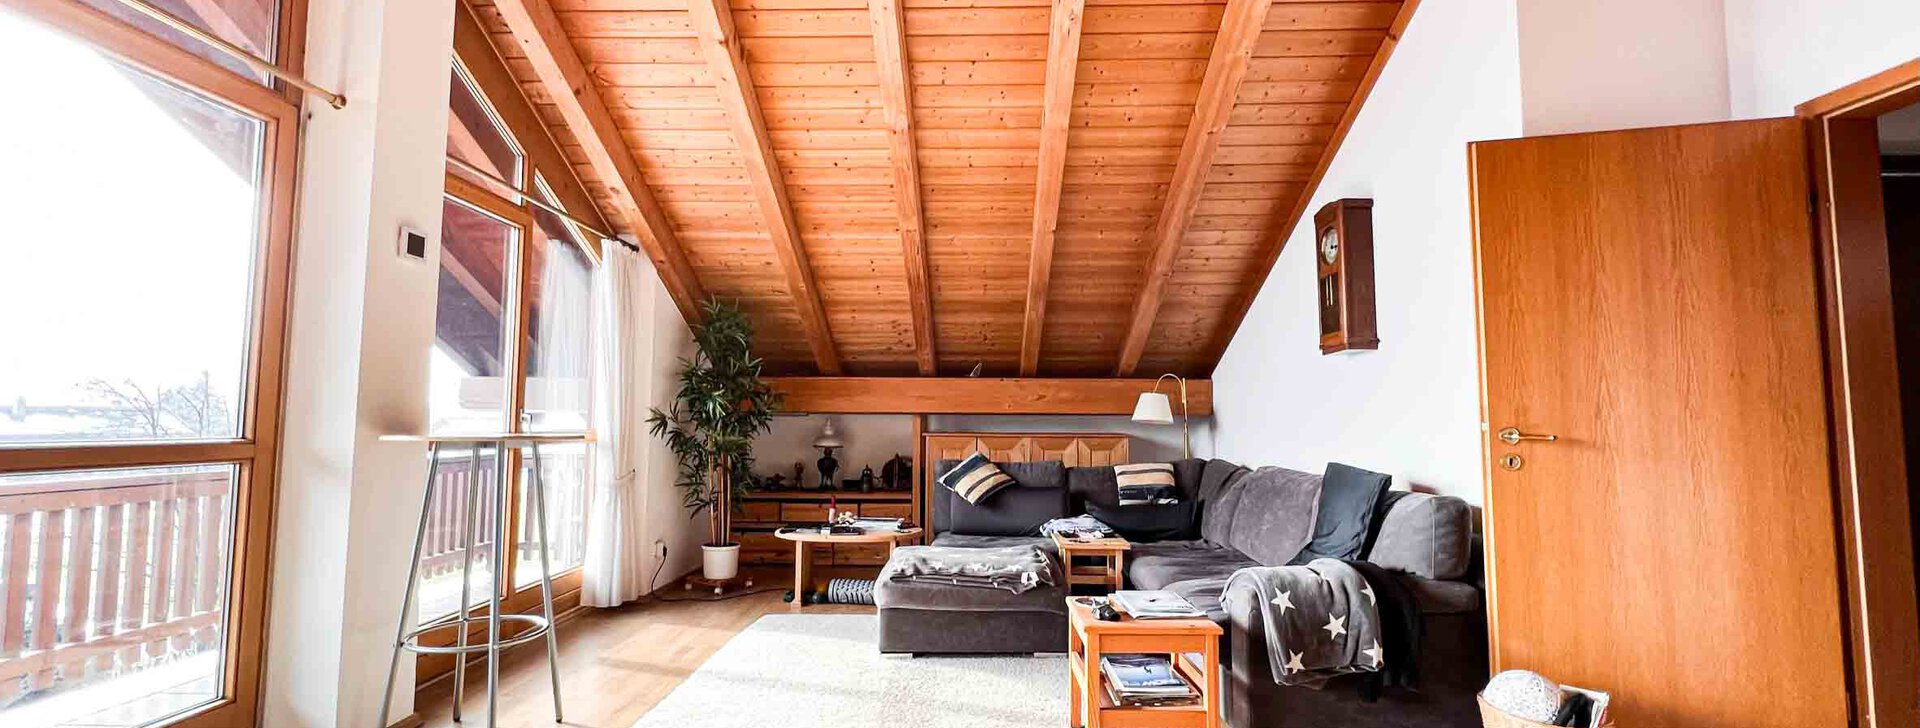 Dachgeschoss Wohnung mit Bergblick in Vachendorf | © HausBauHaus GmbH Traunstein